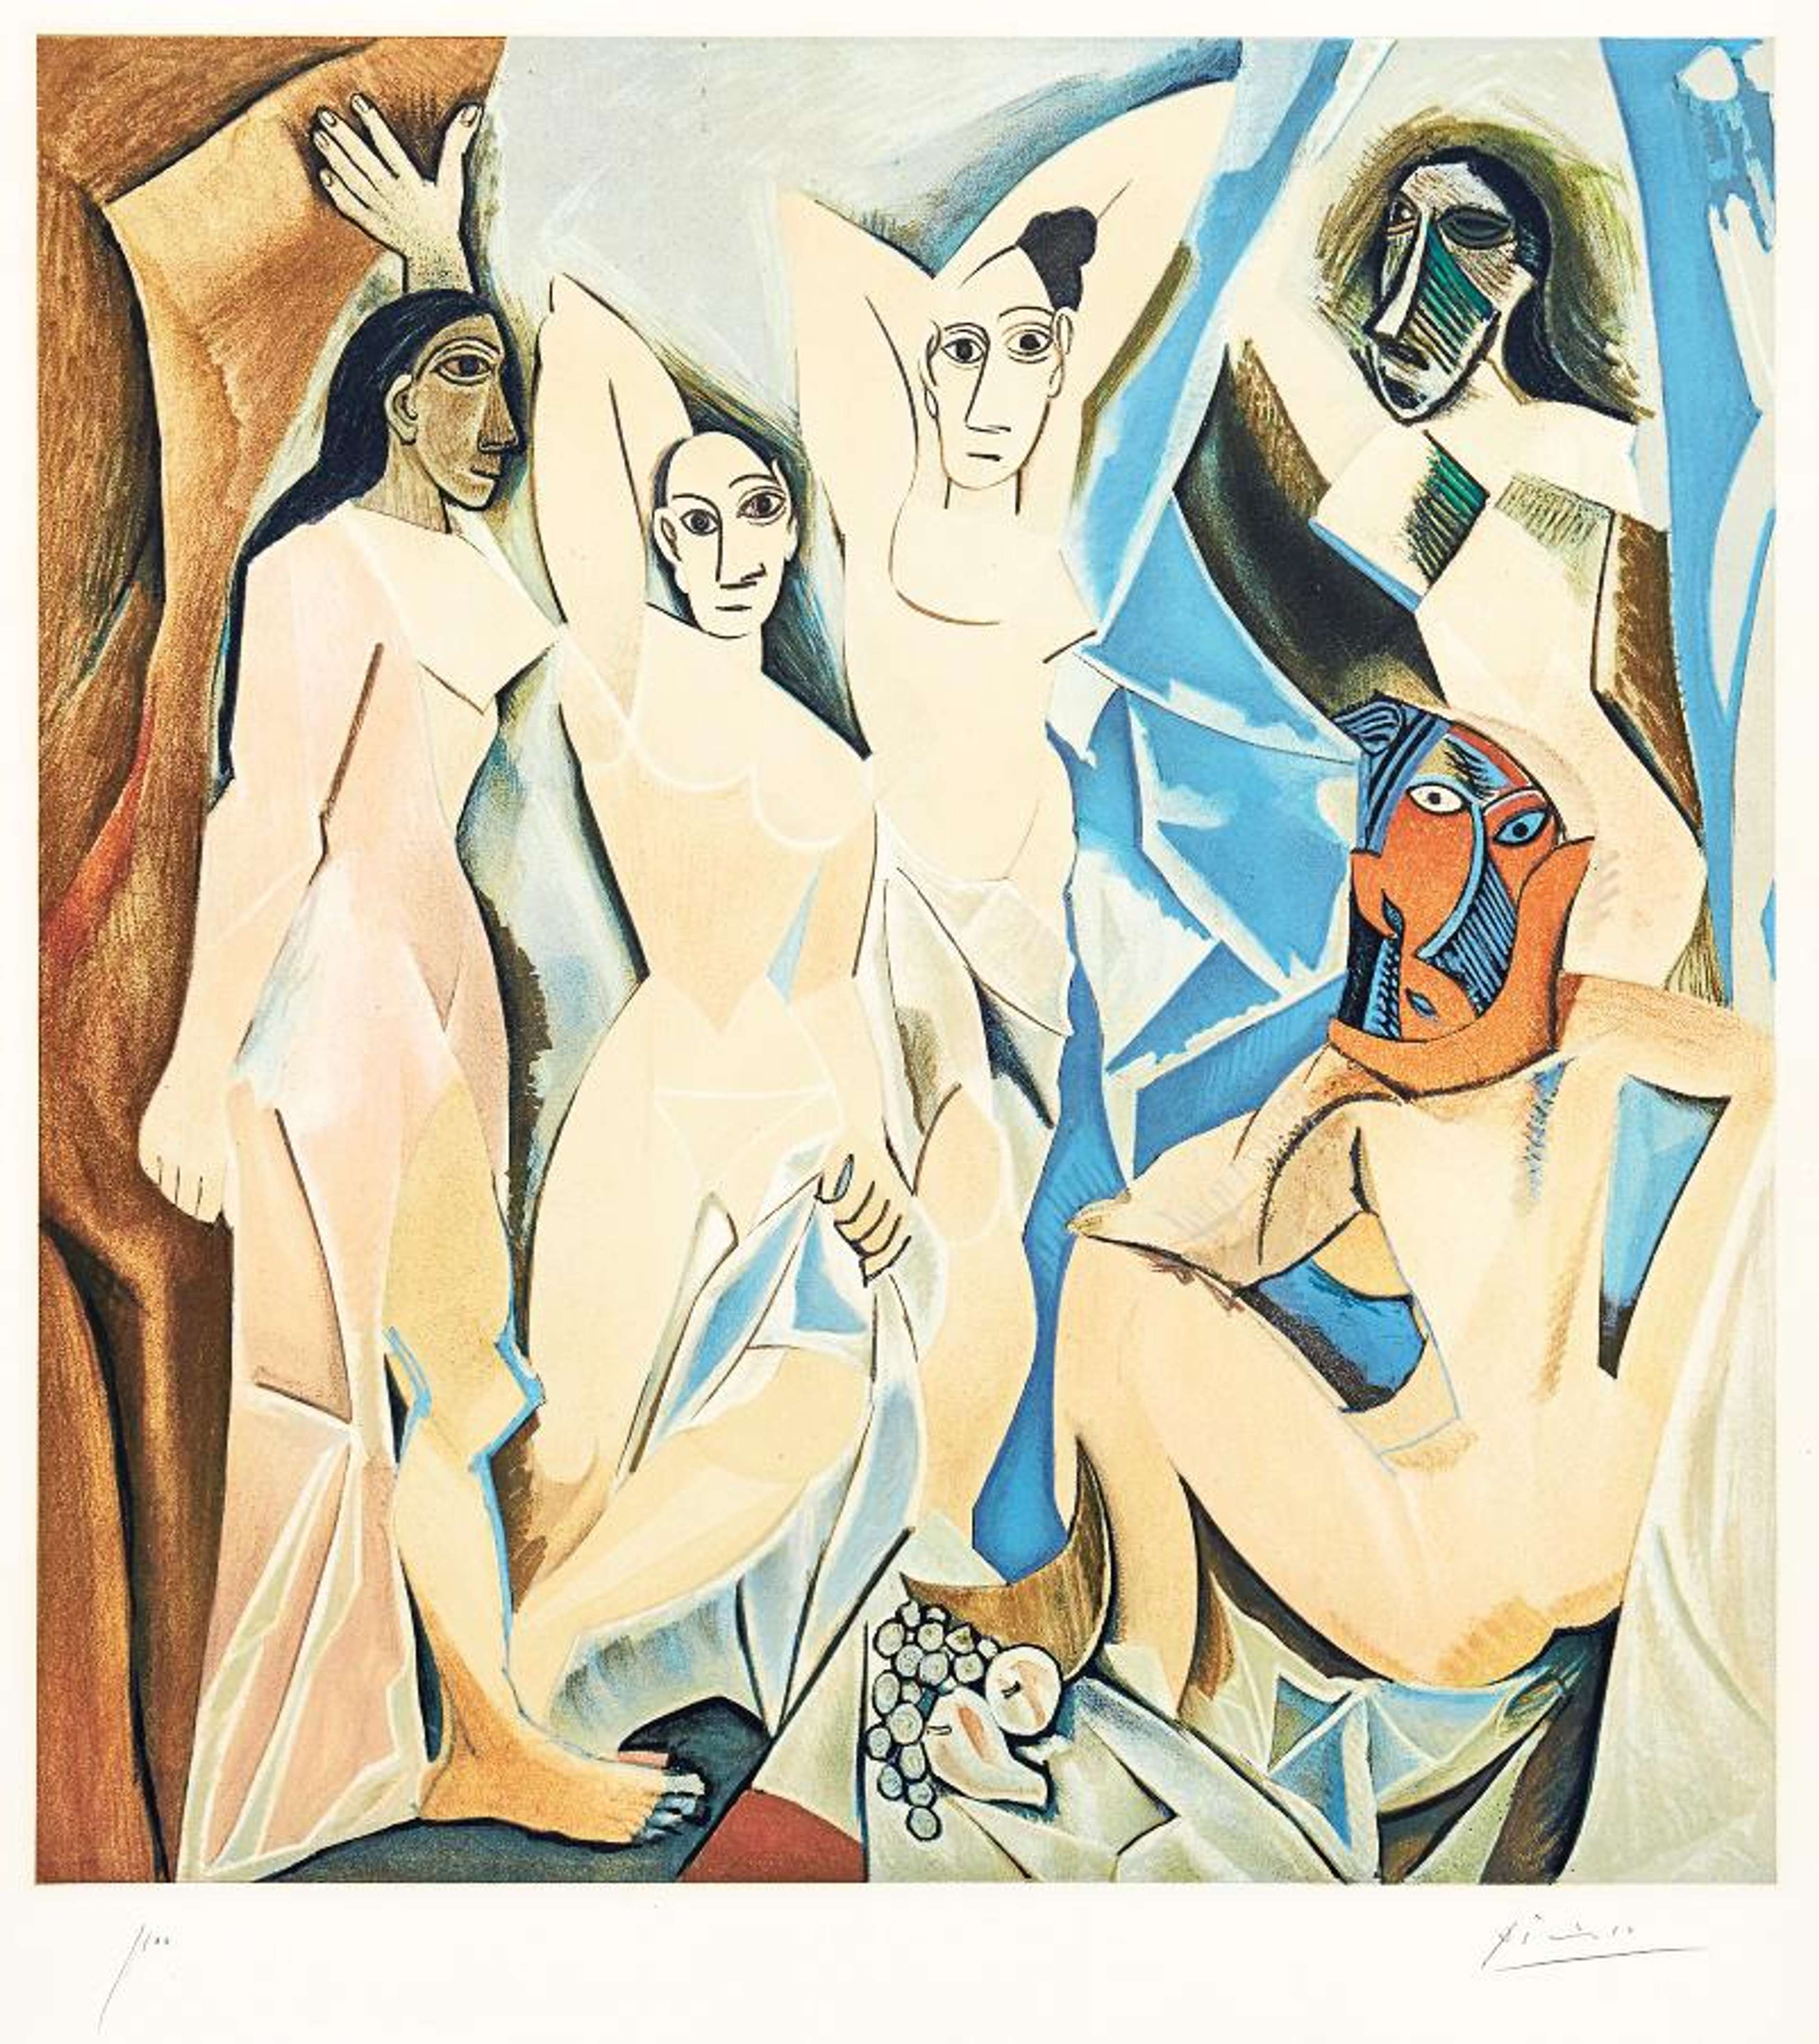 Les Demoiselles Avignon by Pablo Picasso